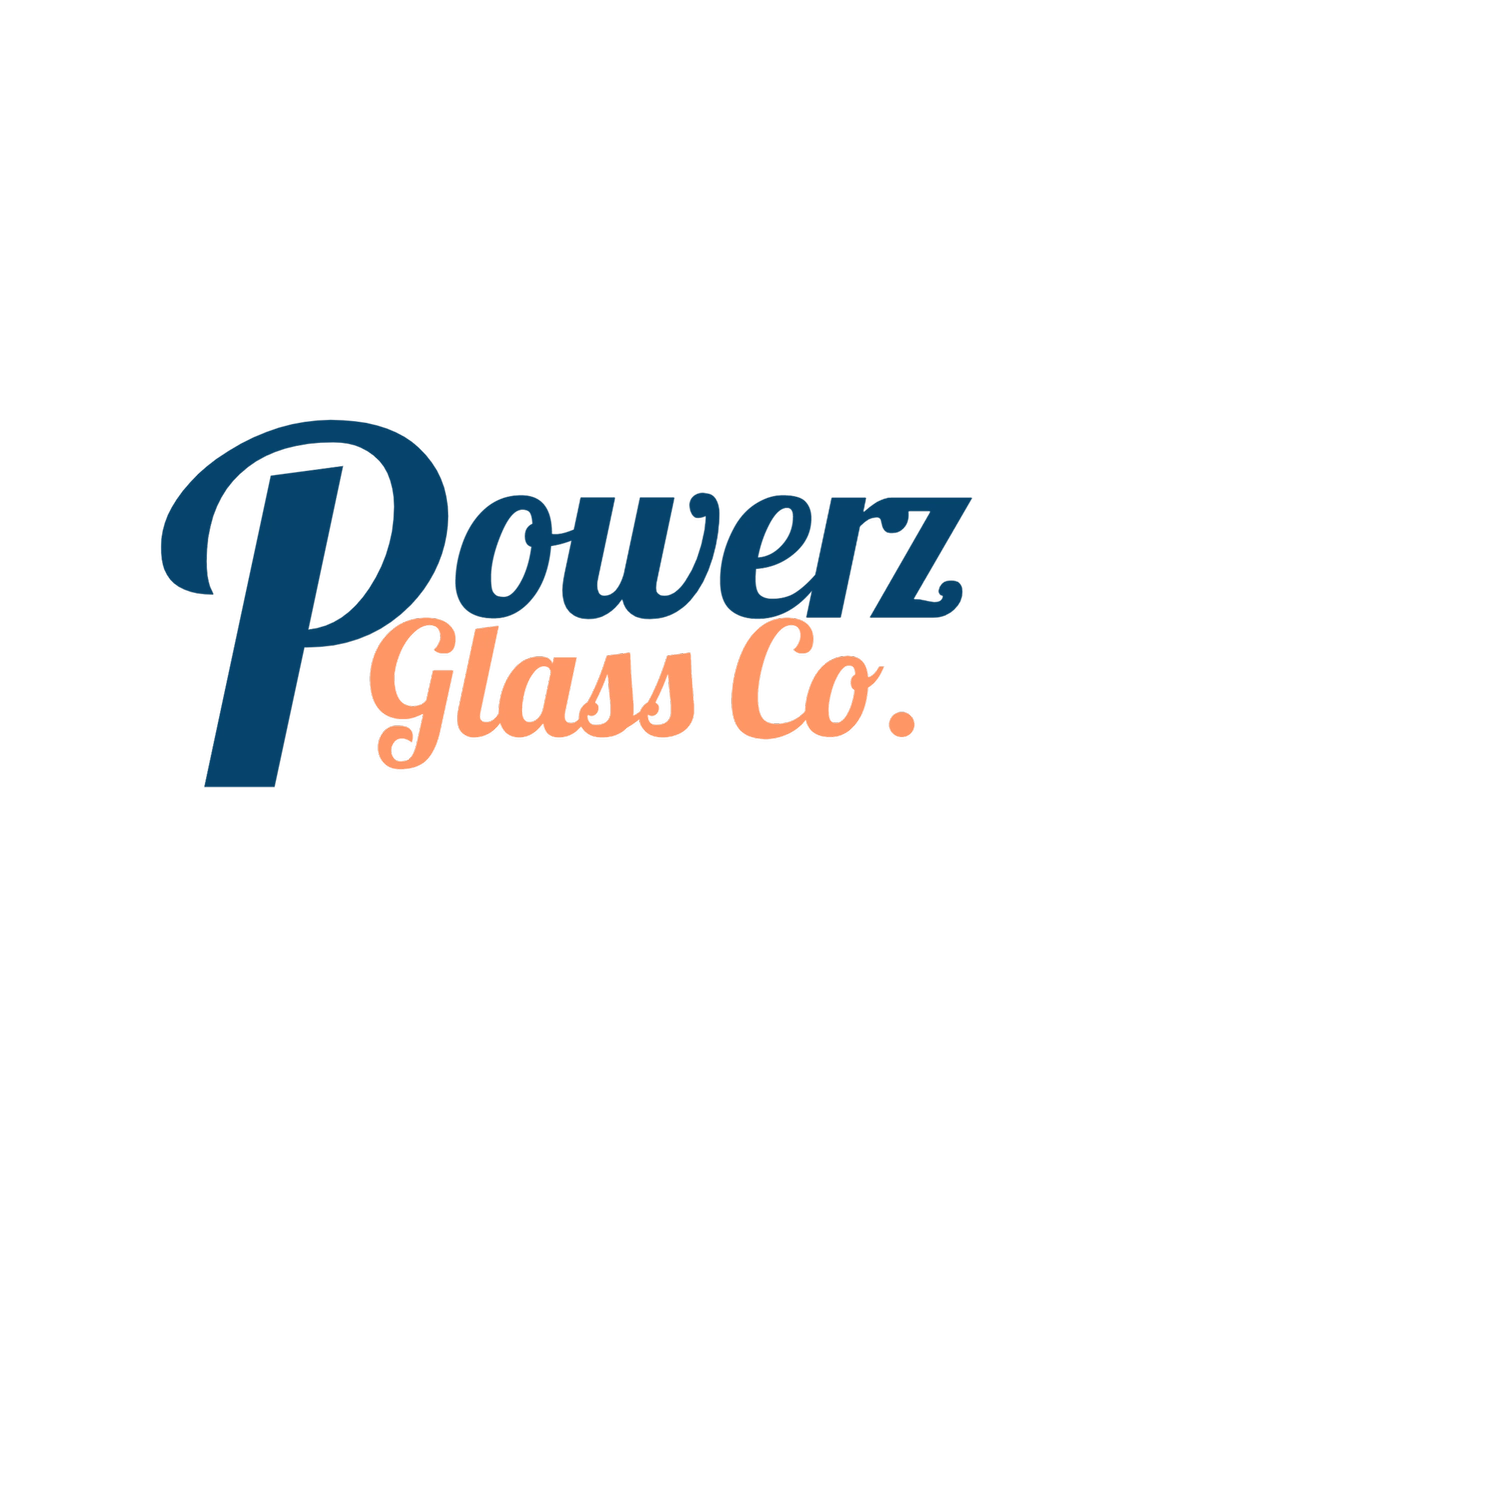 Powerz Glass Co Logo